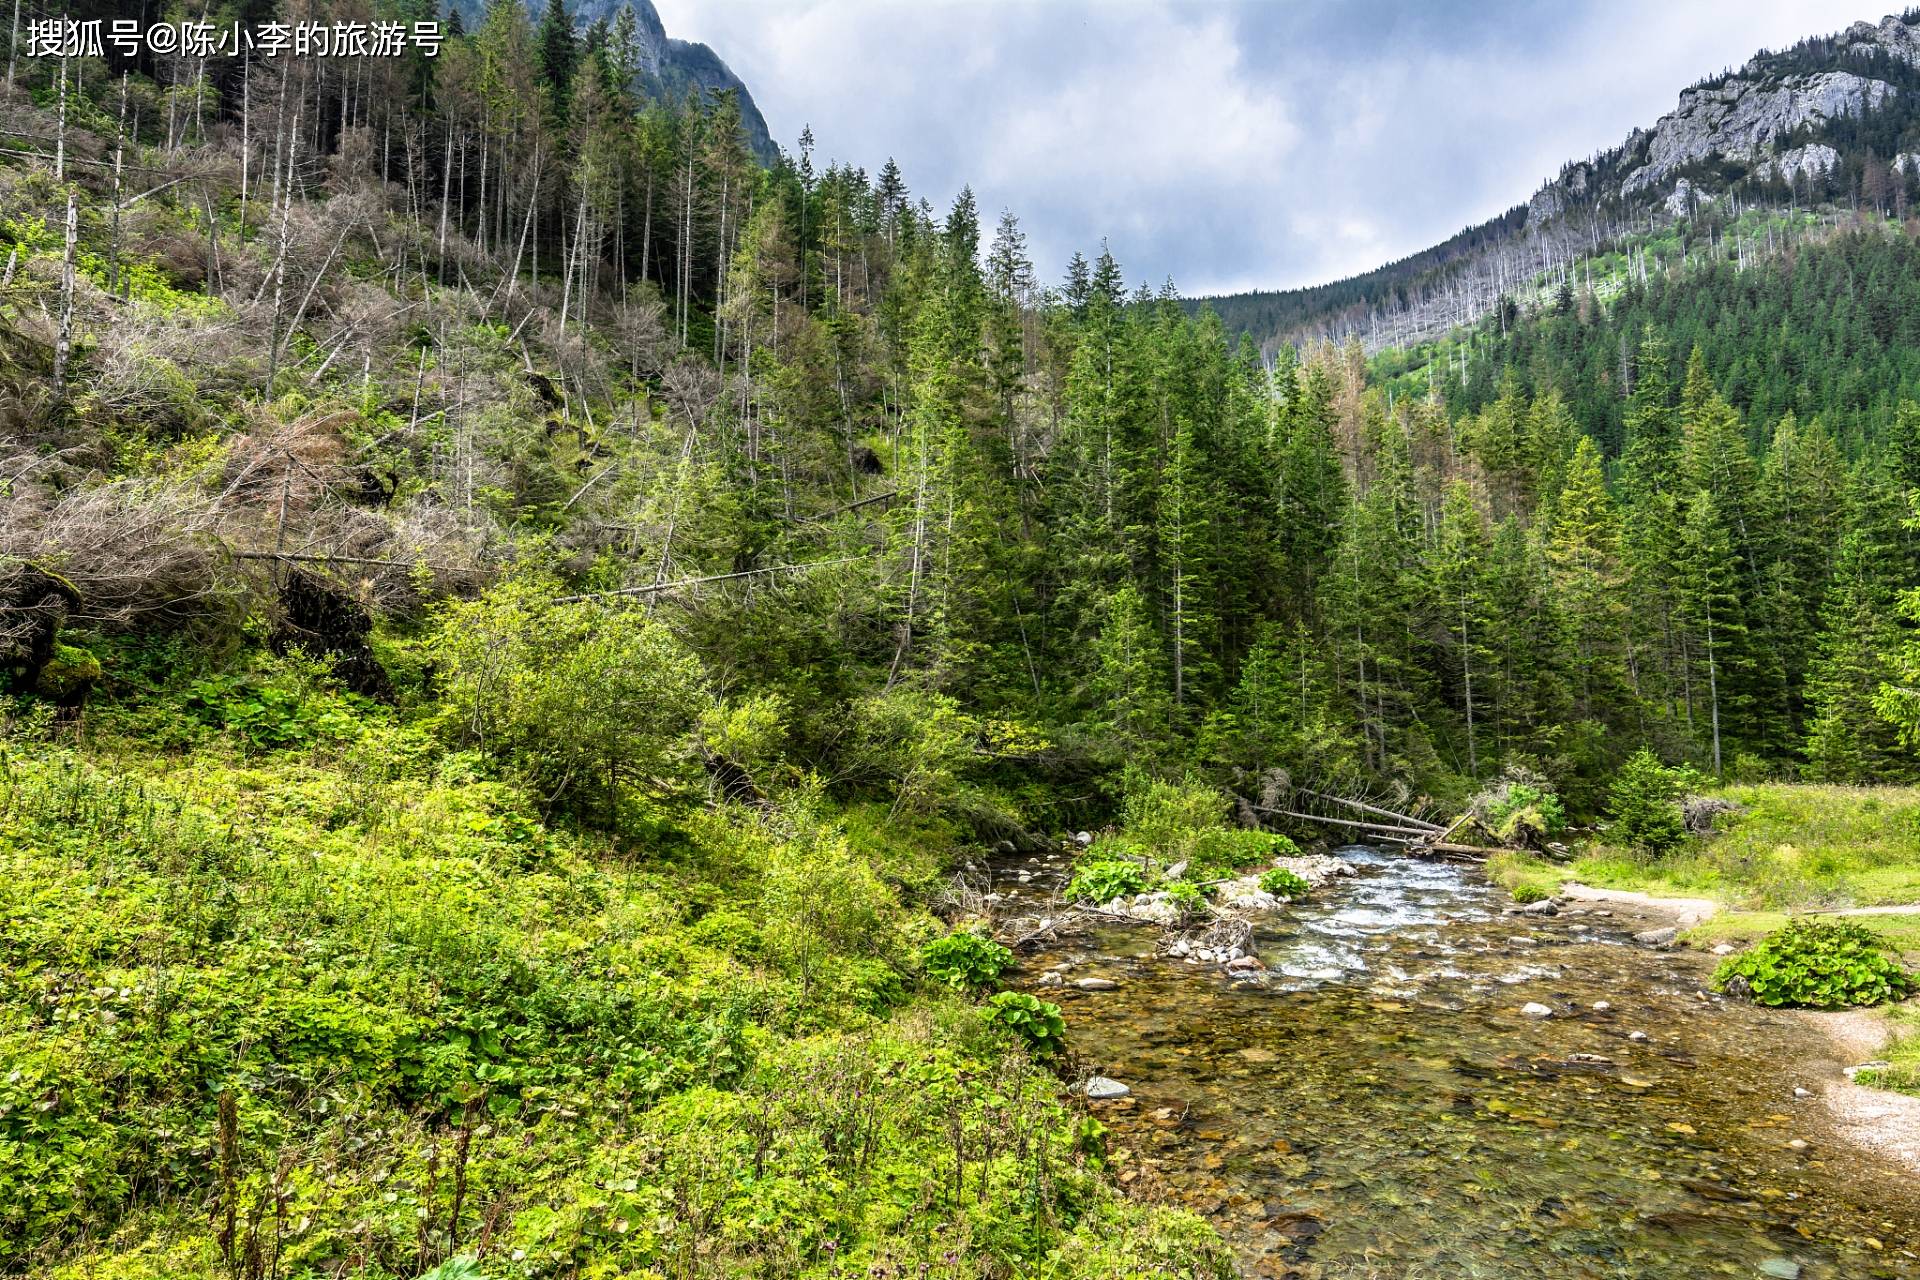 吐鲁沟国家森林公园,一个神话般的绿色山谷,四季美景如画卷